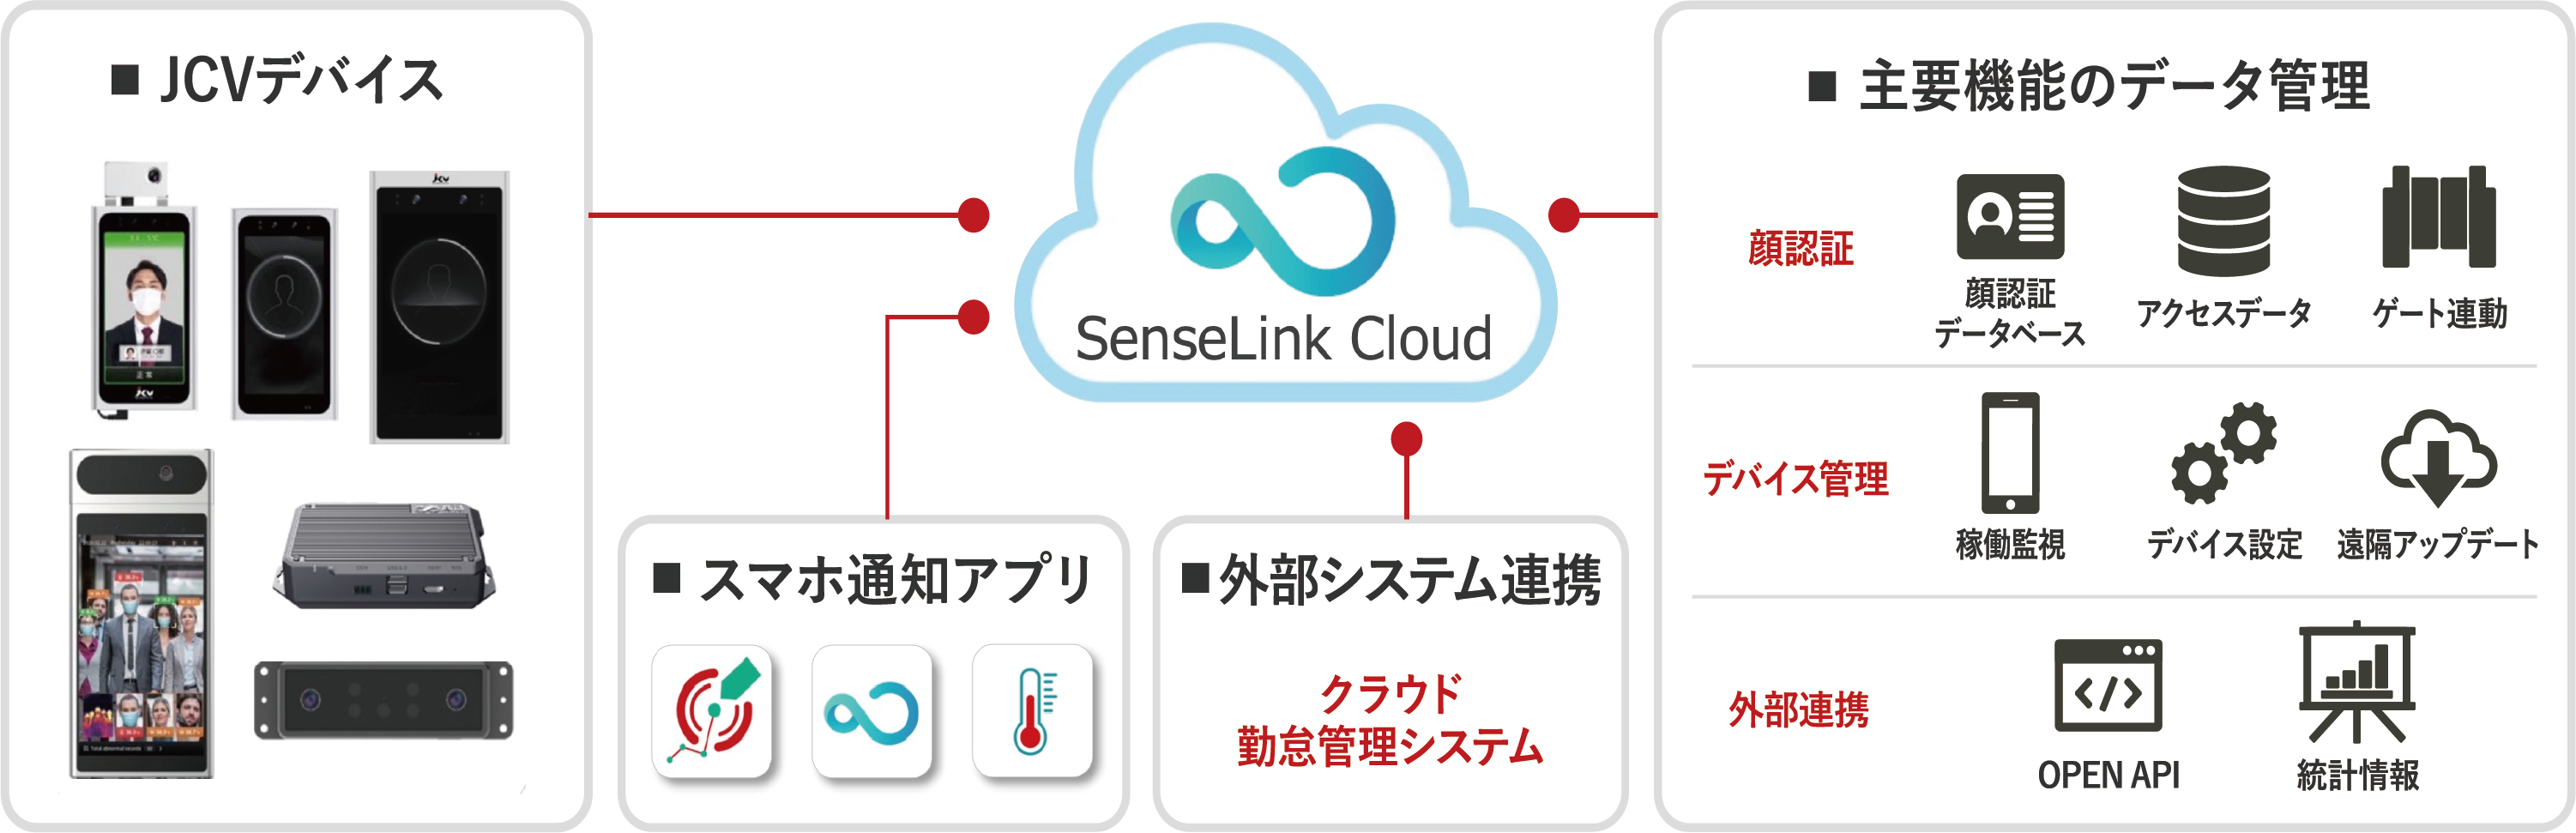 最大100万人の顔認証ができる「SenseLink Cloud」 | お知らせ | JCV 